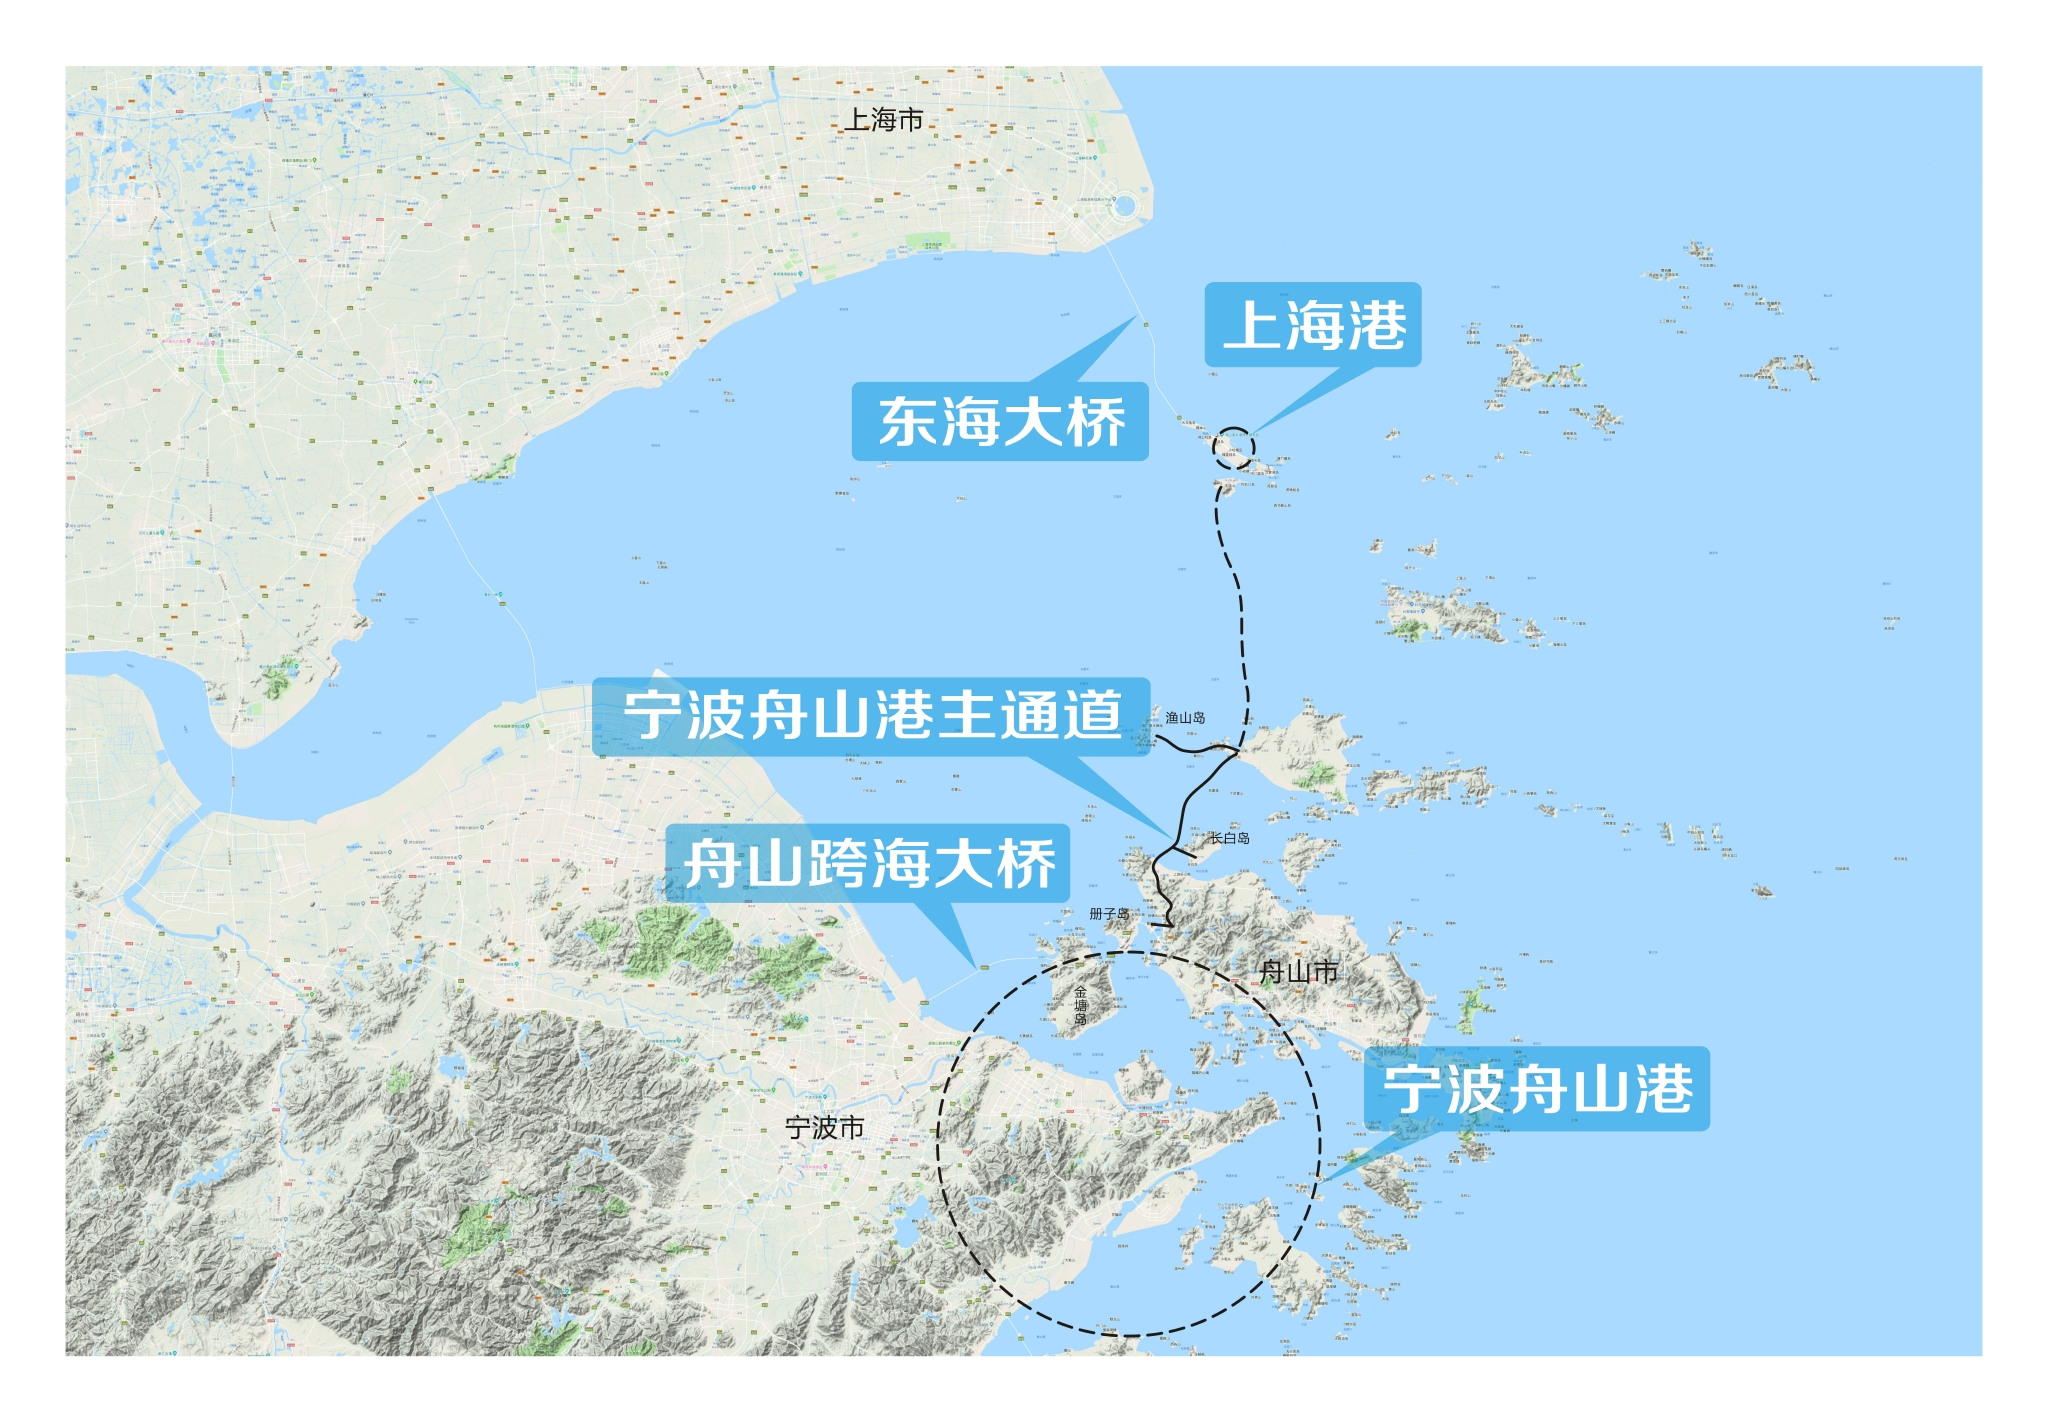 宁波舟山港主通道全线通车海上高速公路串连5座岛屿